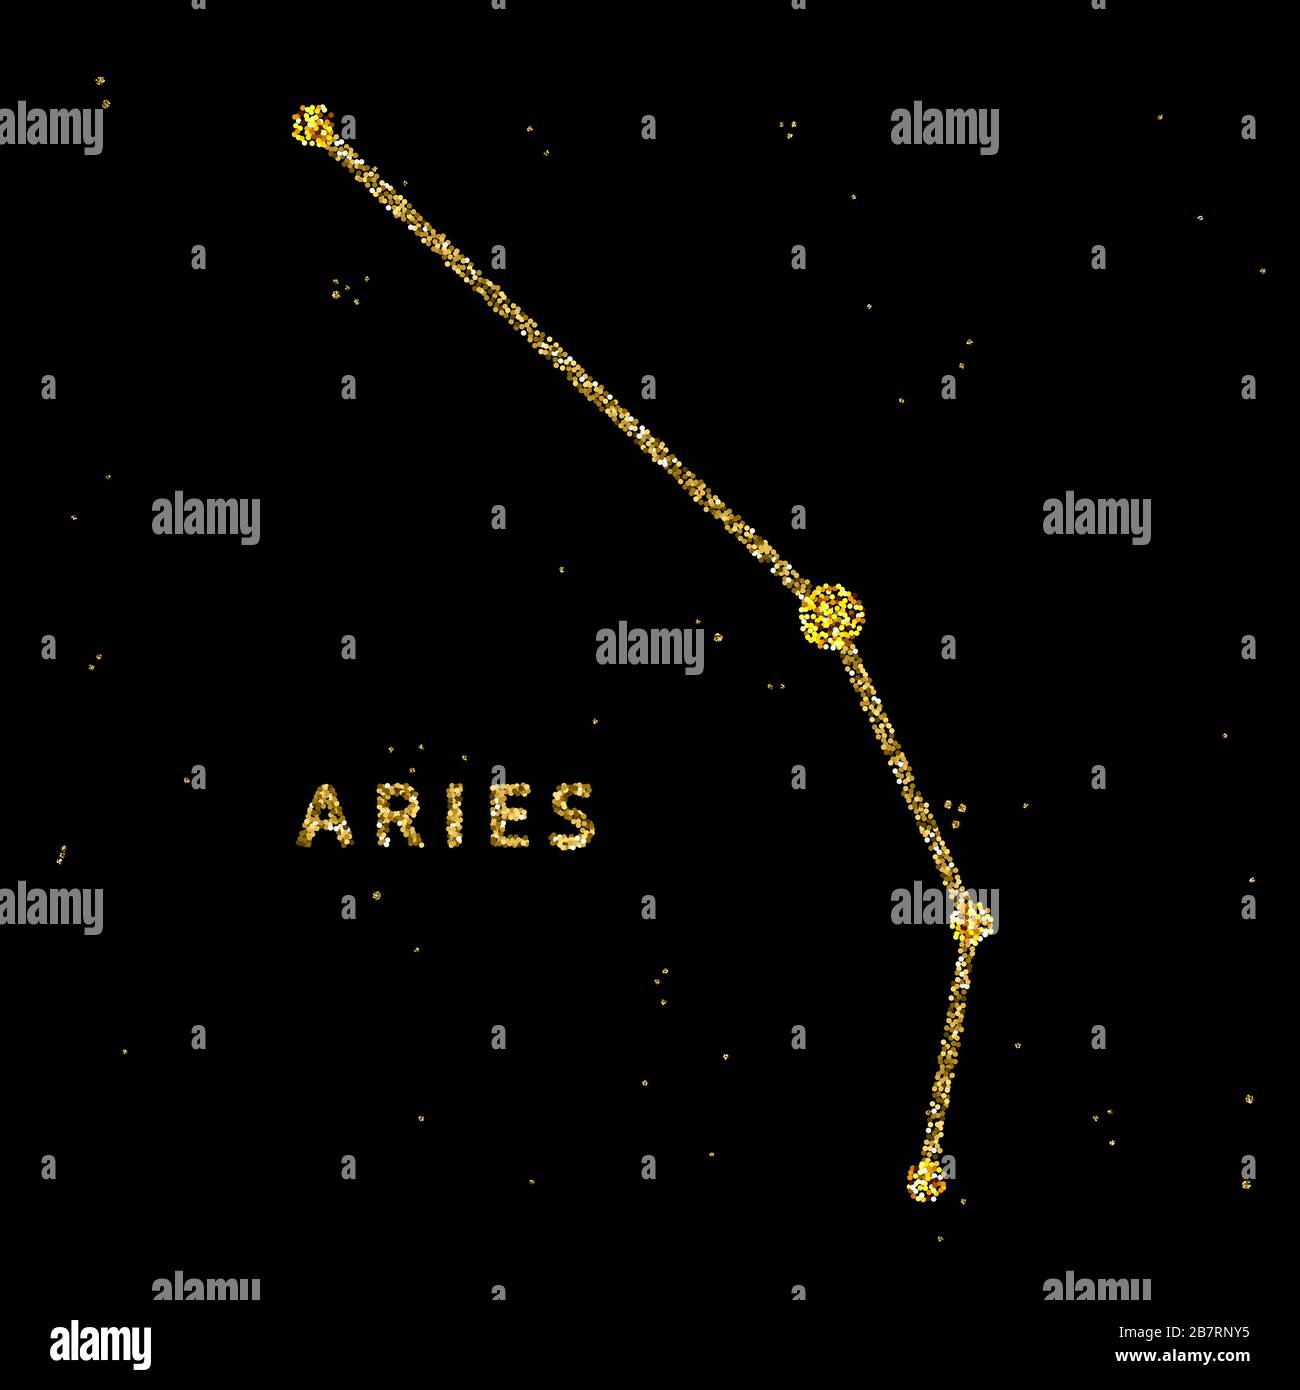 Widder-Tierkreis-Horoskop-Zeichen, die Astrologie simbol in goldenem glänzendem glitzerndem Stil auf schwarzem Himmelshintergrund. Stock Vektor